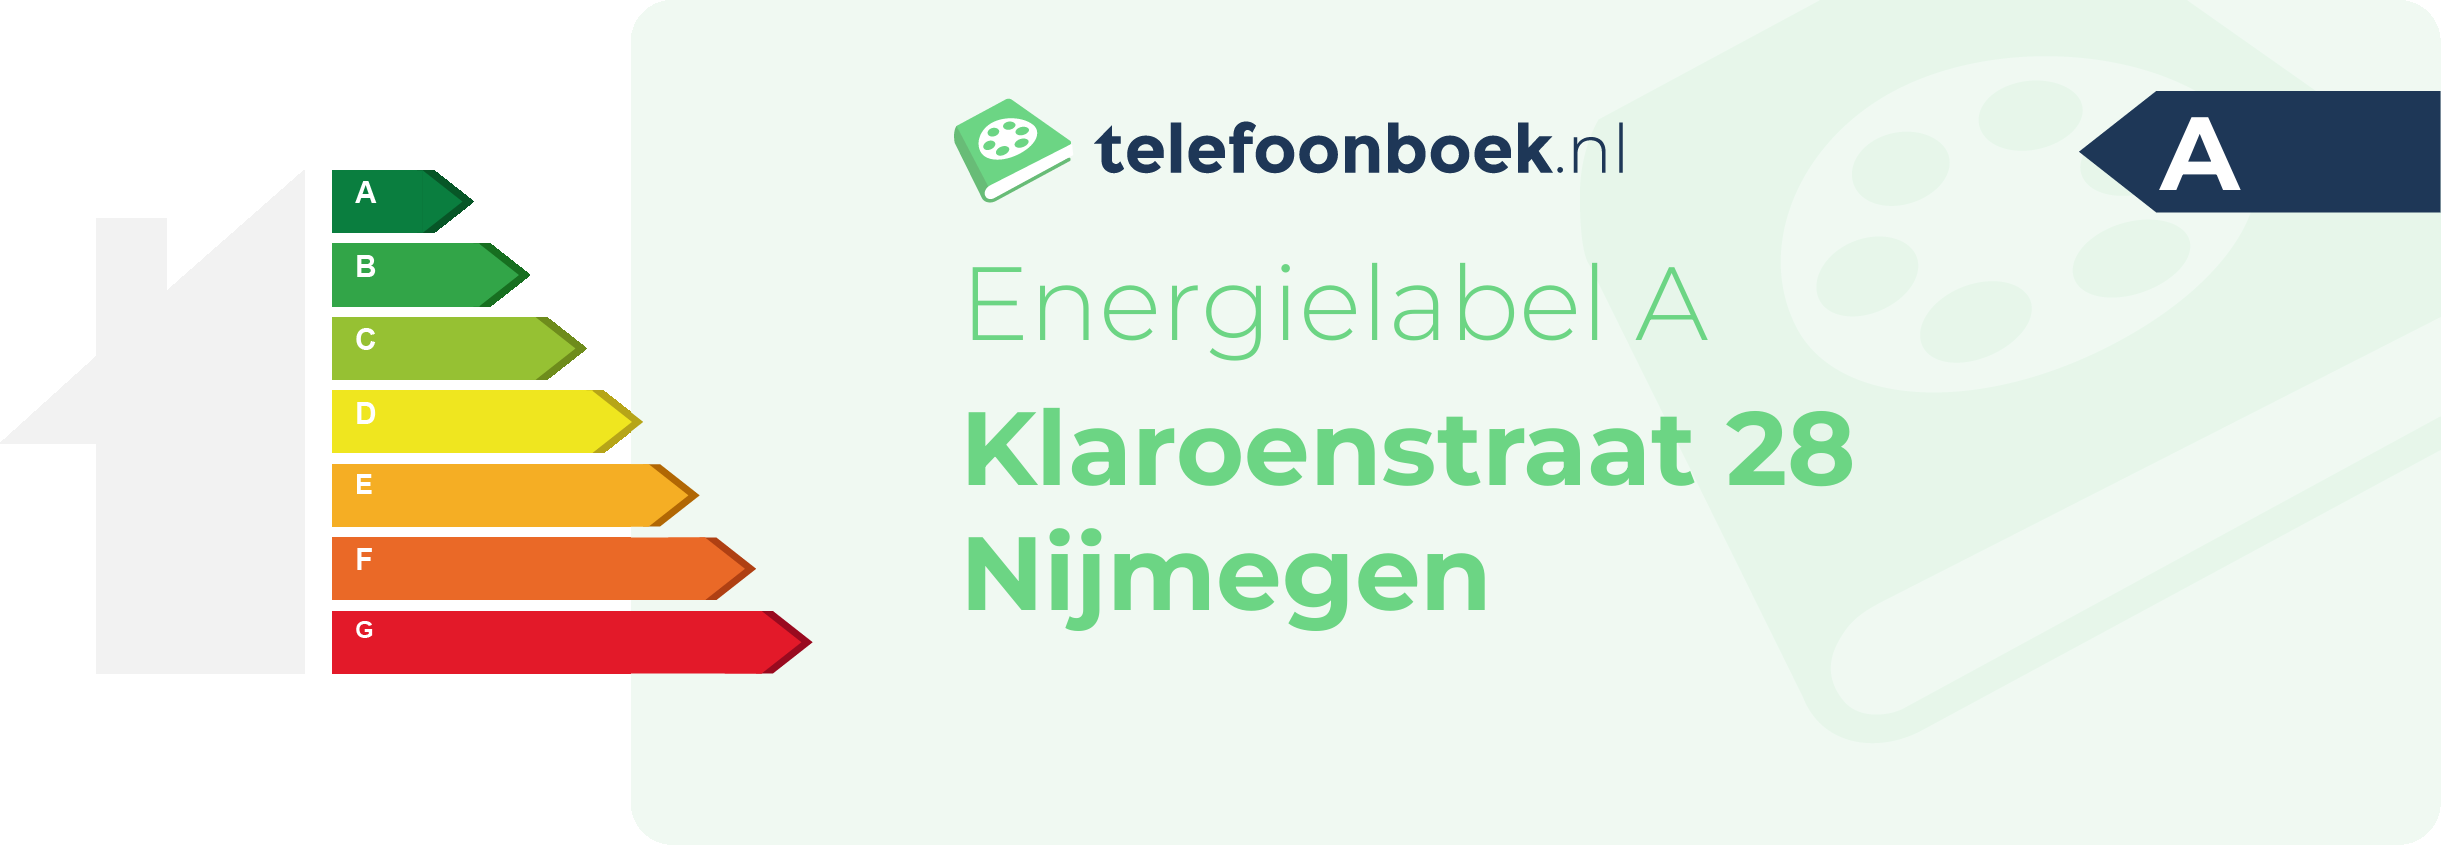 Energielabel Klaroenstraat 28 Nijmegen